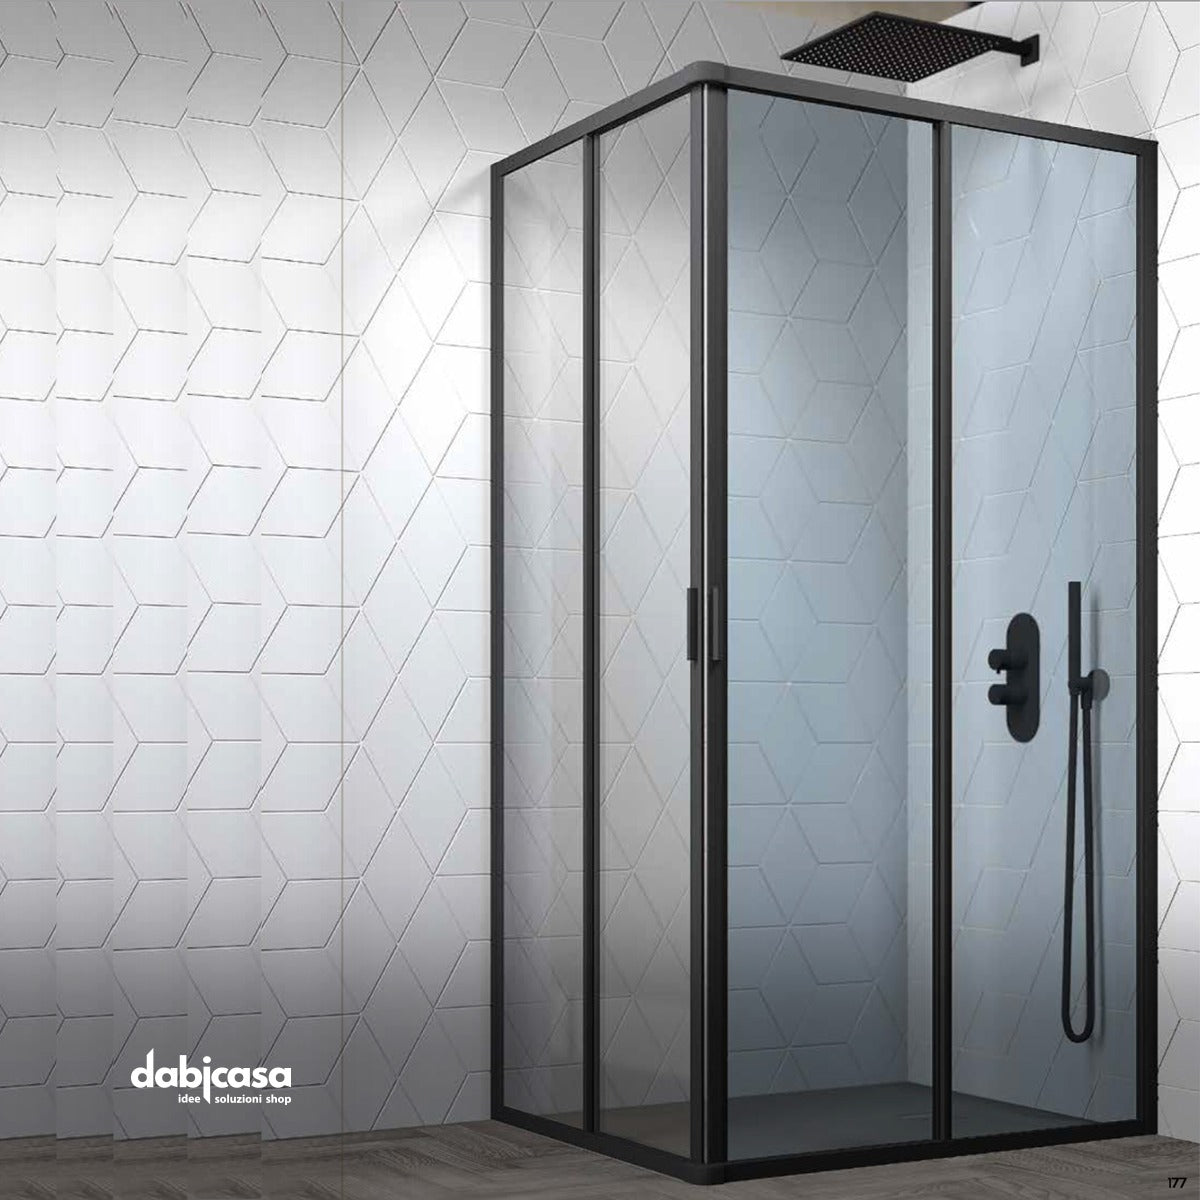 Box doccia "New Smeralda" angolare 70x100 in alluminio e pannello in vetro con profili nero essenza freeshipping - Dabicasa